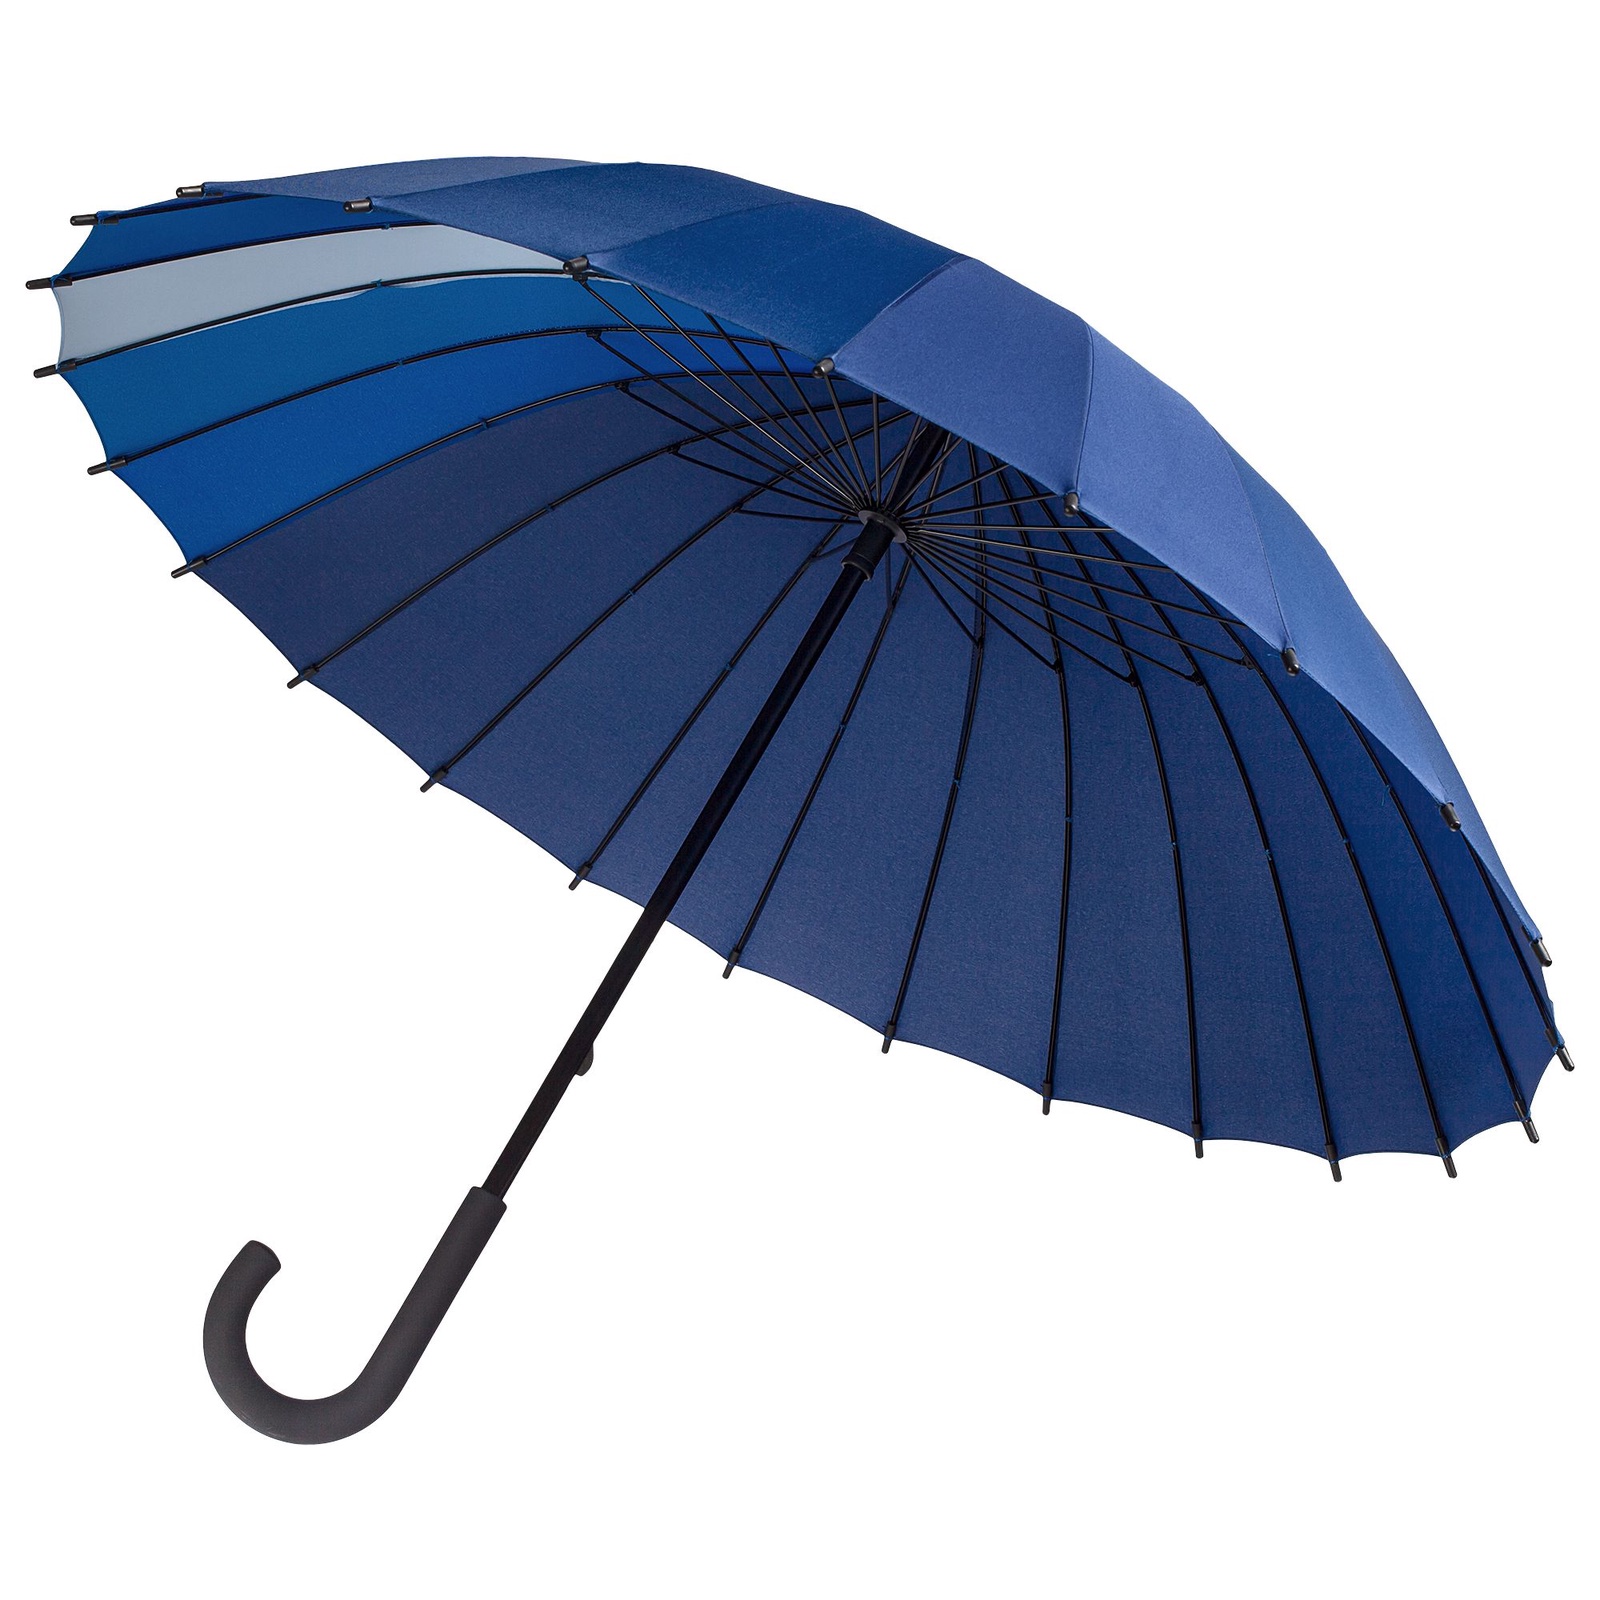 Зонтик и т и. Зонт-трость «спектр». Зонт реверсивный 4047624 Blue. Molti зонт спектр. Westland зонт-трость.